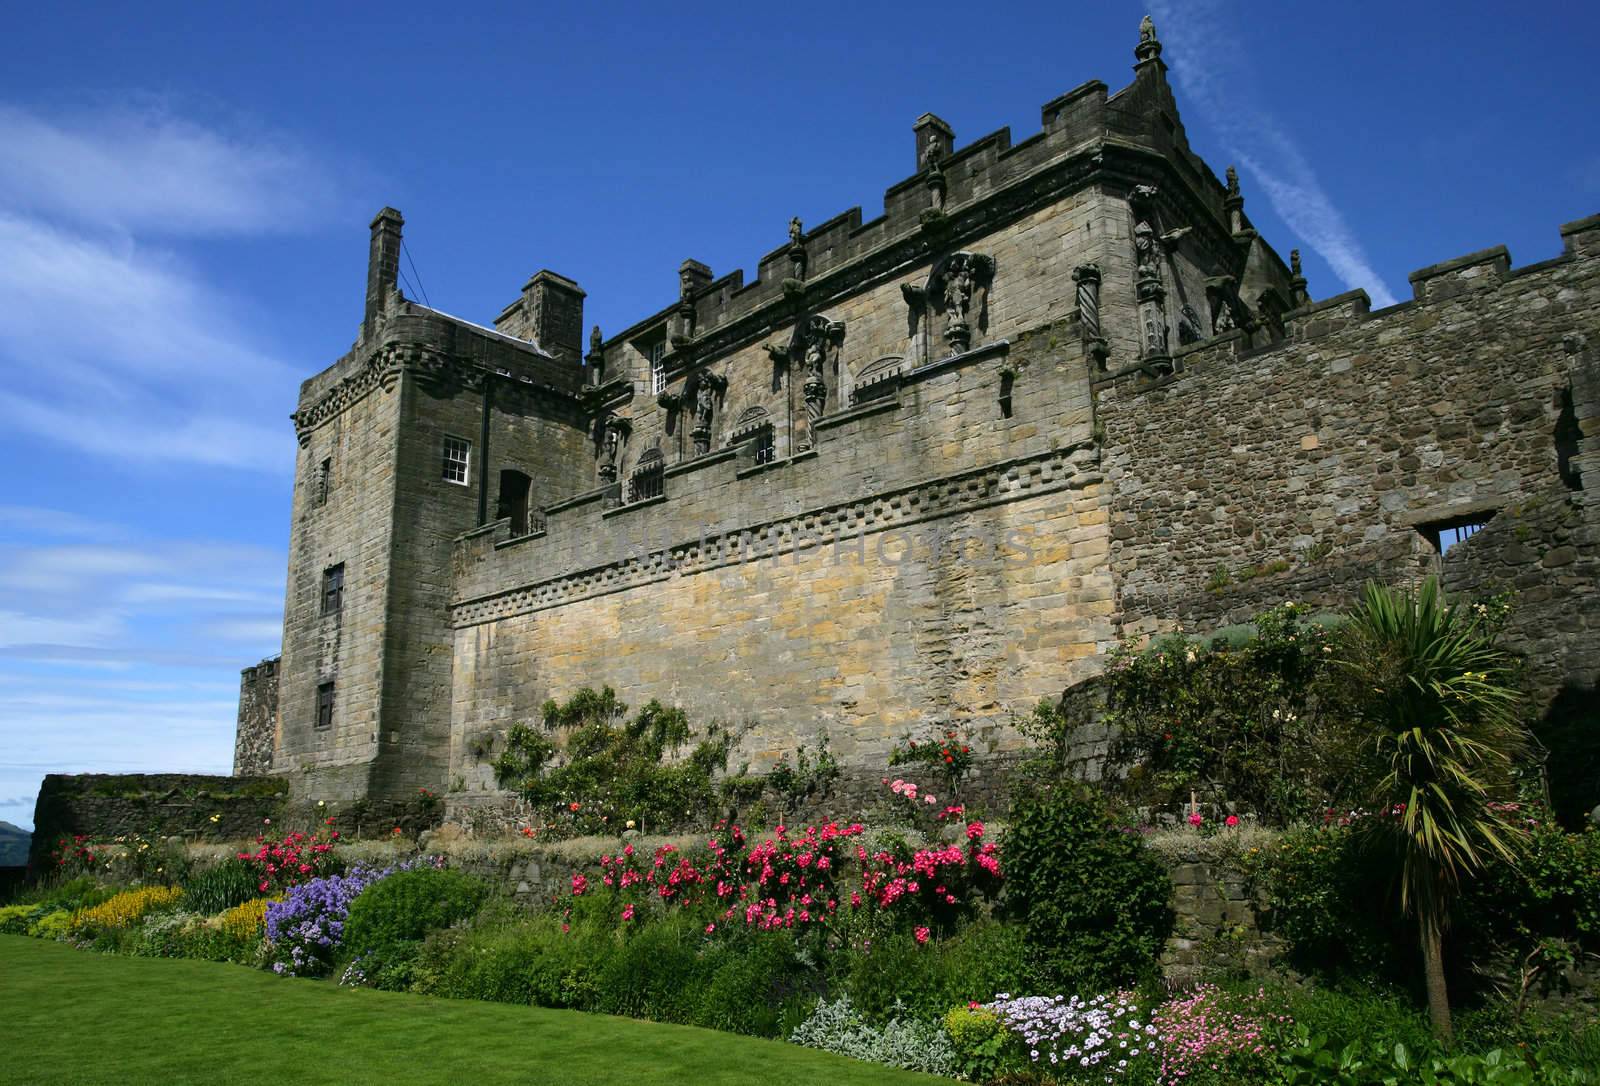 Stirling Castle in Stirling, Scotland.
